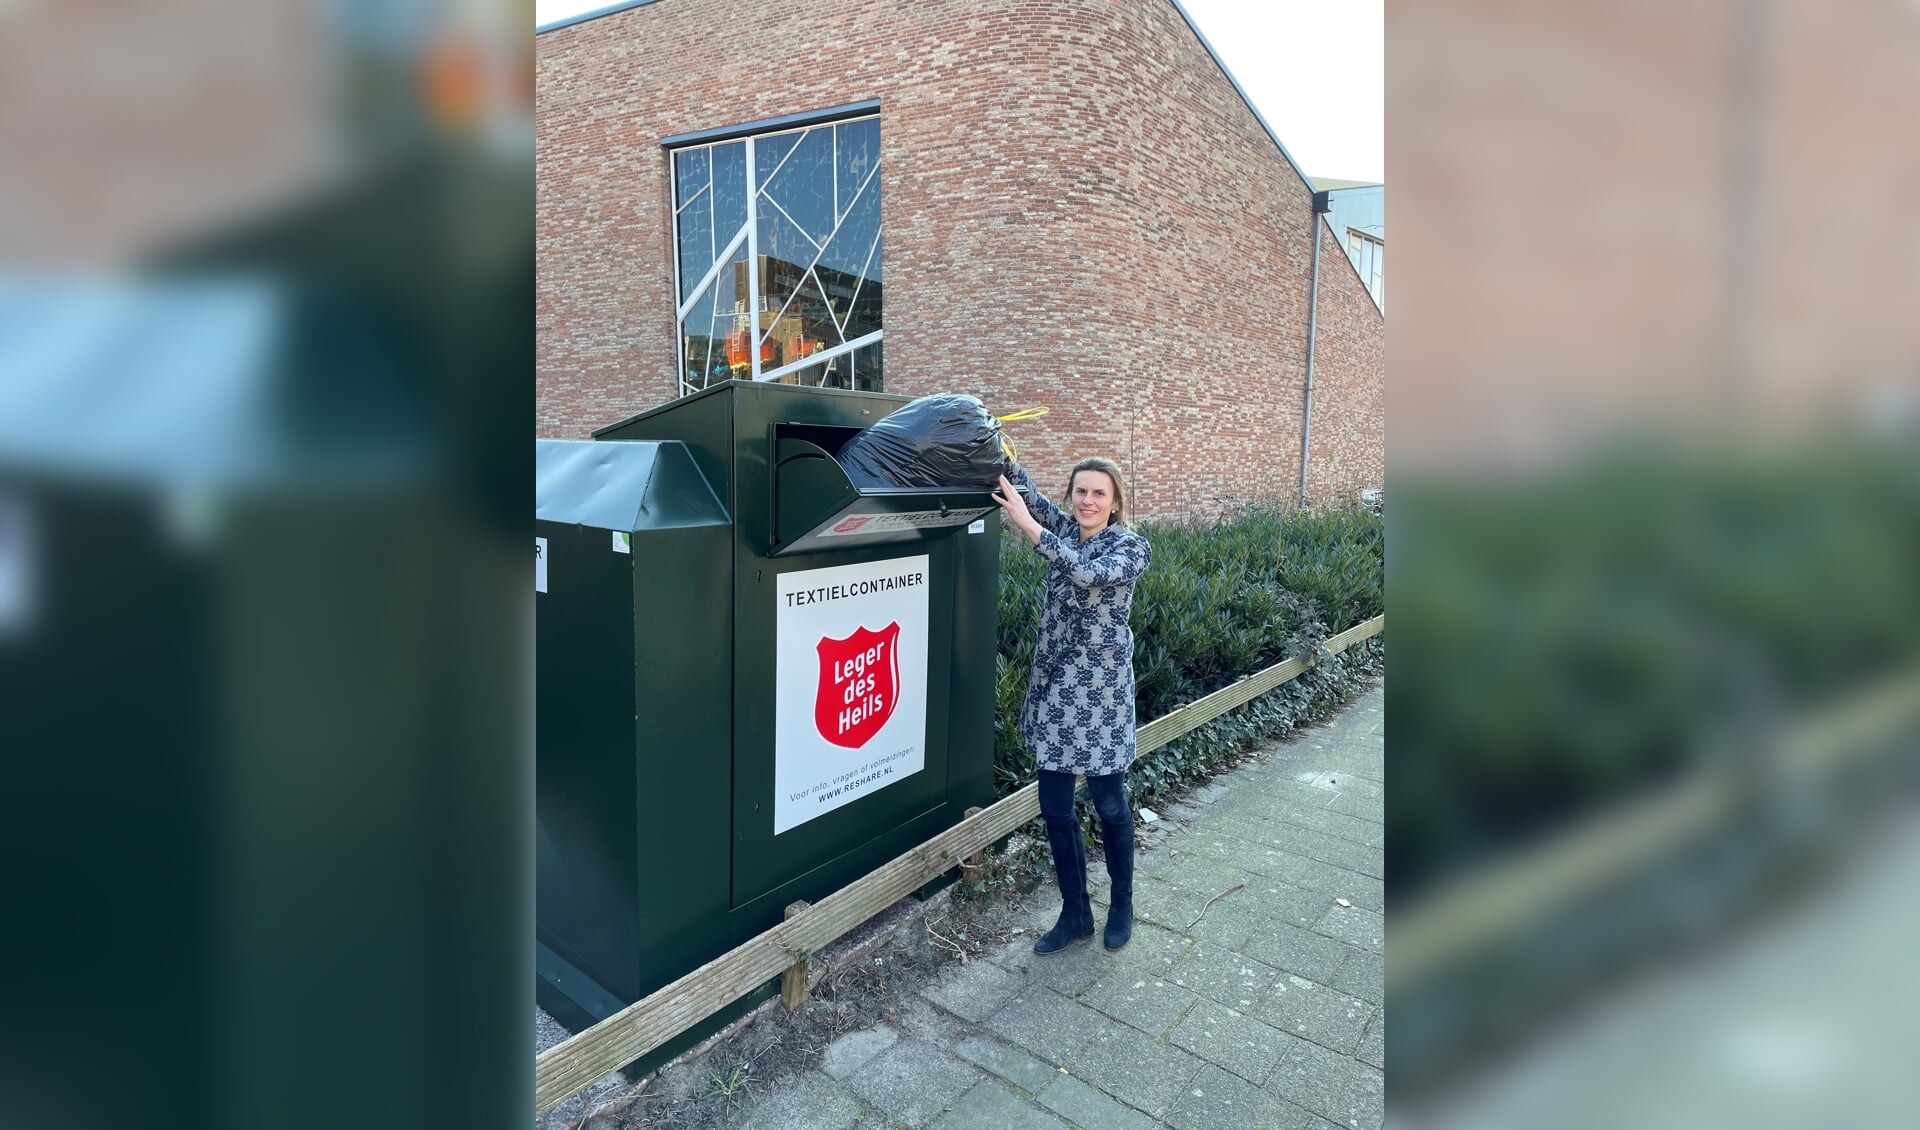 Emotie hebben bevind zich Kledingcontainer Leger des Heils bij Koningkerk - Al het nieuws uit  Leidschendam en Voorburg